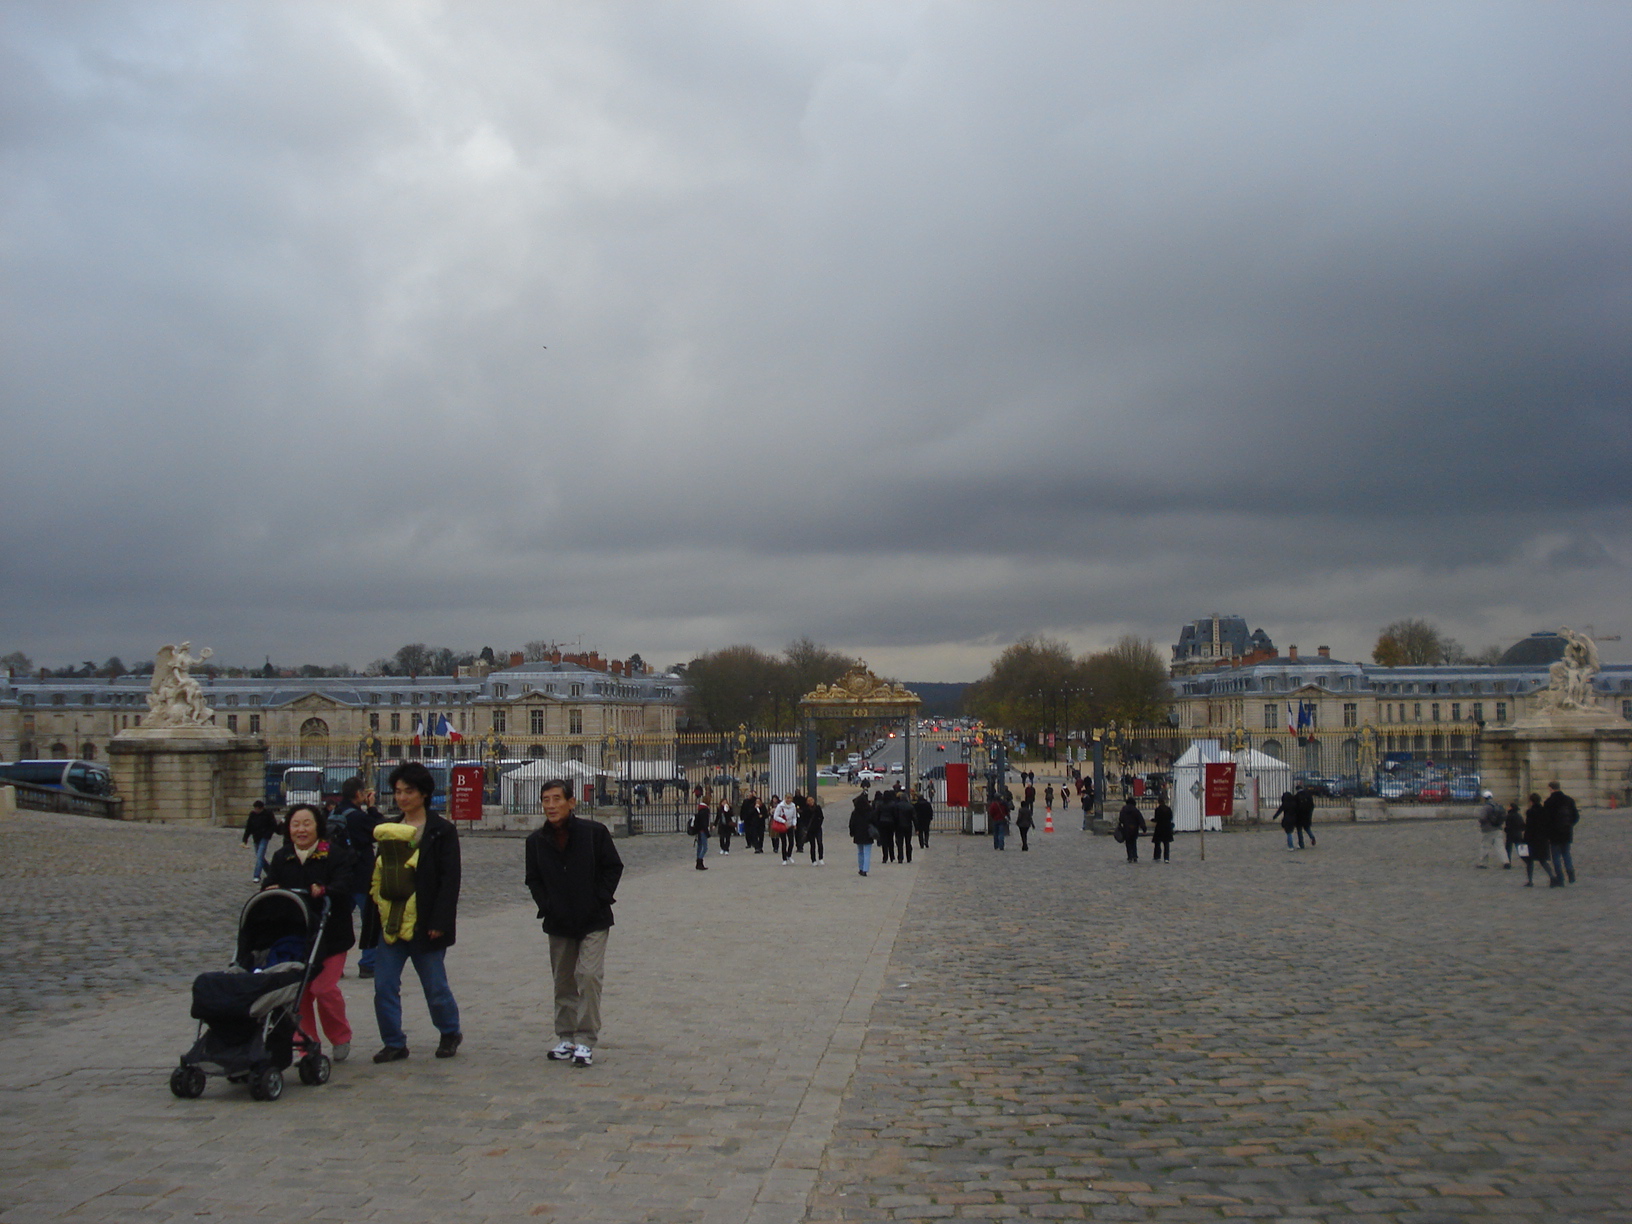 Entrada do Palácio de Versailles, região de Paris, França